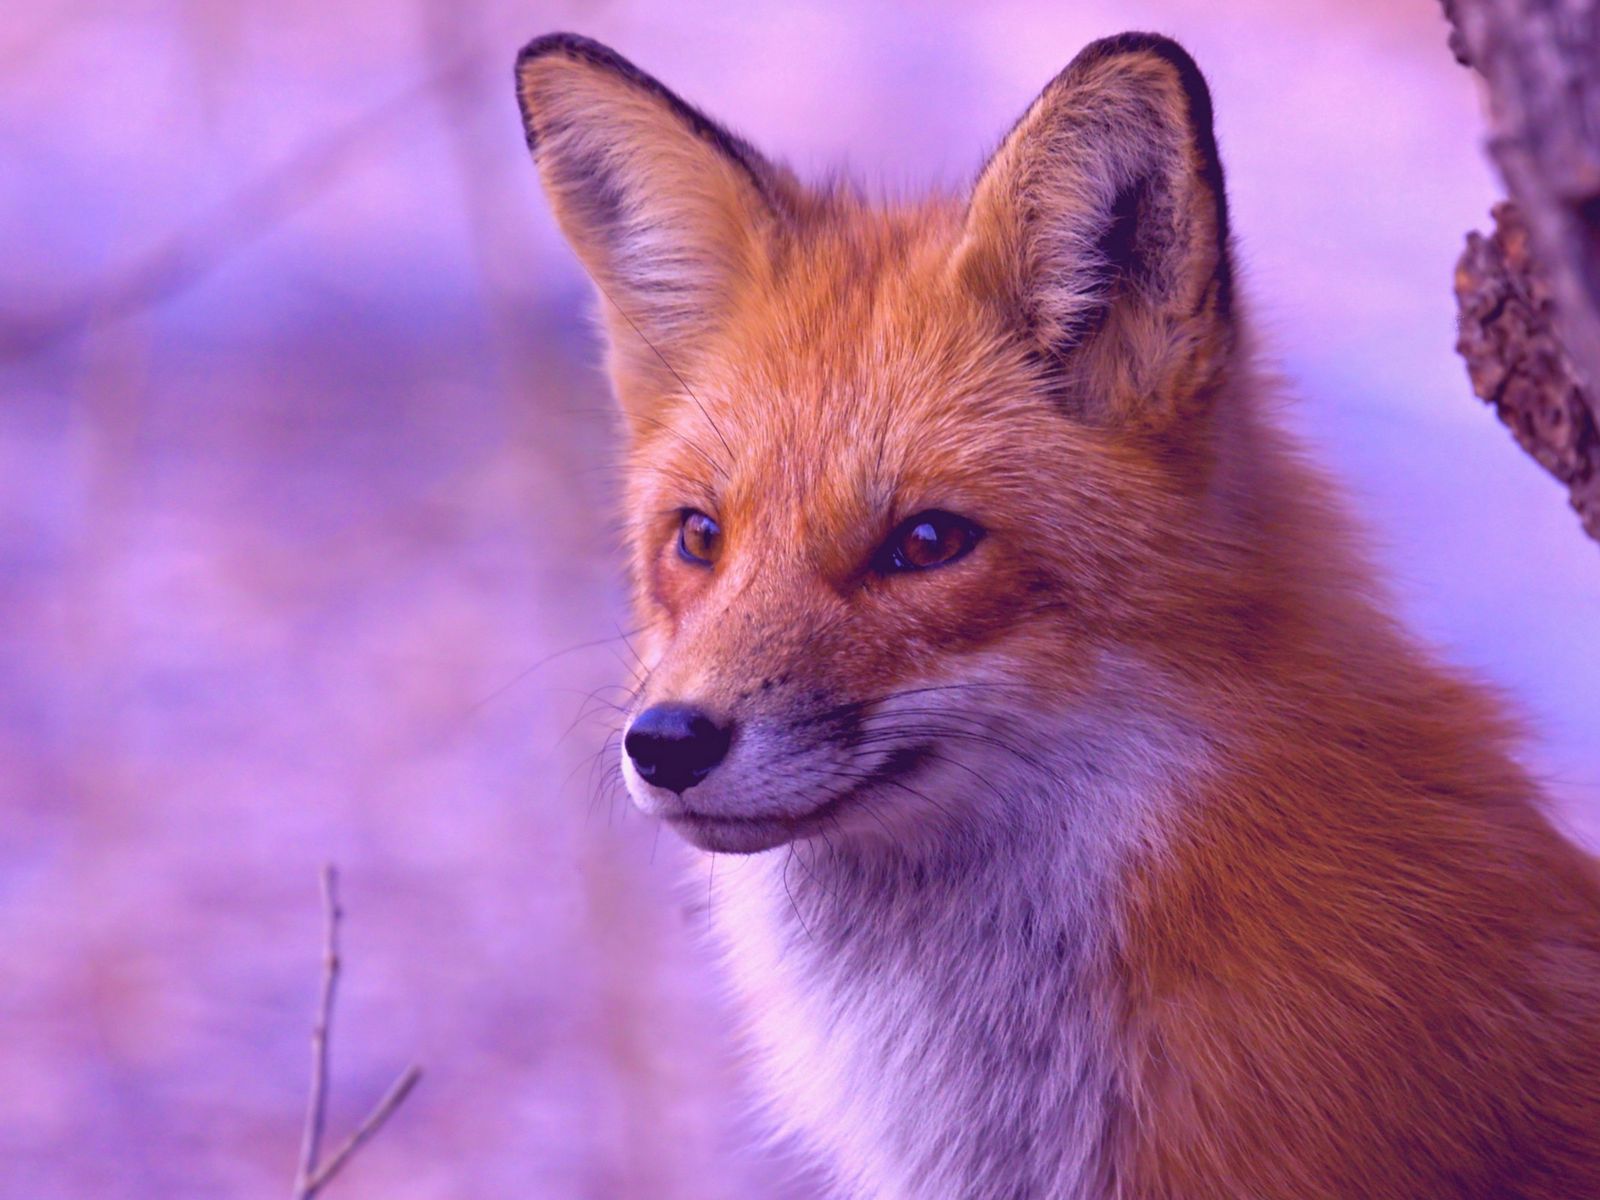 K fox. Лисица. Лиса картинка. Красивые картинки лисиц. Рыжая лиса с голубыми глазами.